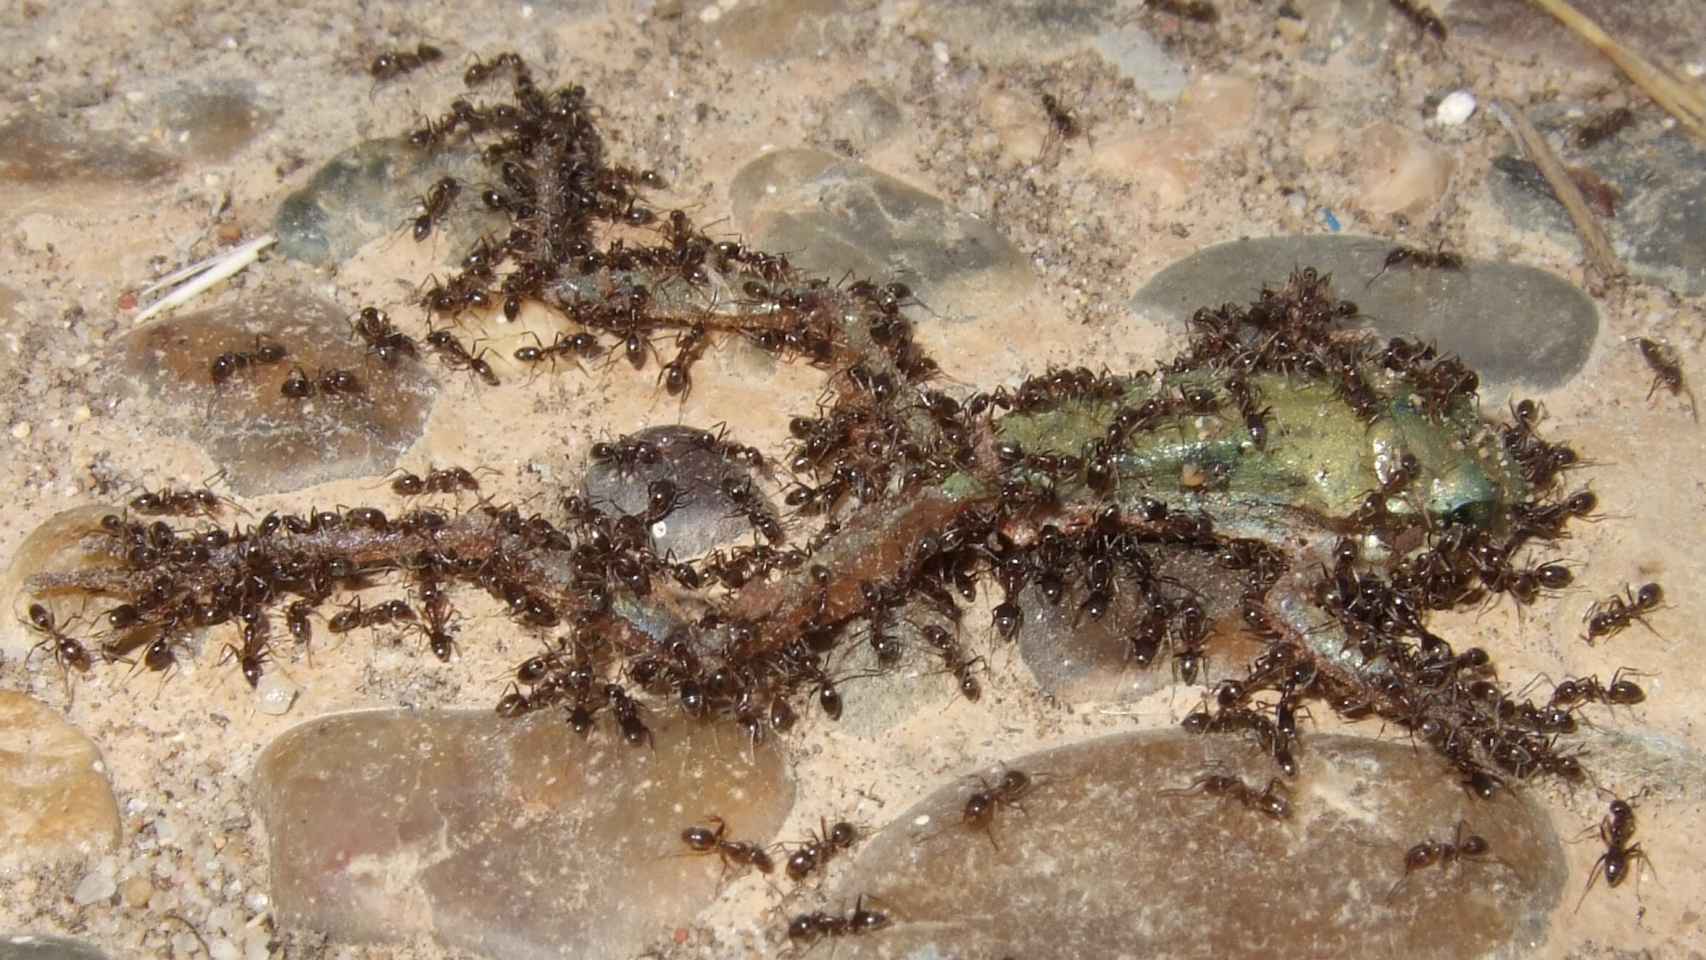 Un grupo de hormigas argentinas ataca a un ejemplar de anfibio juvenil en Doñana.